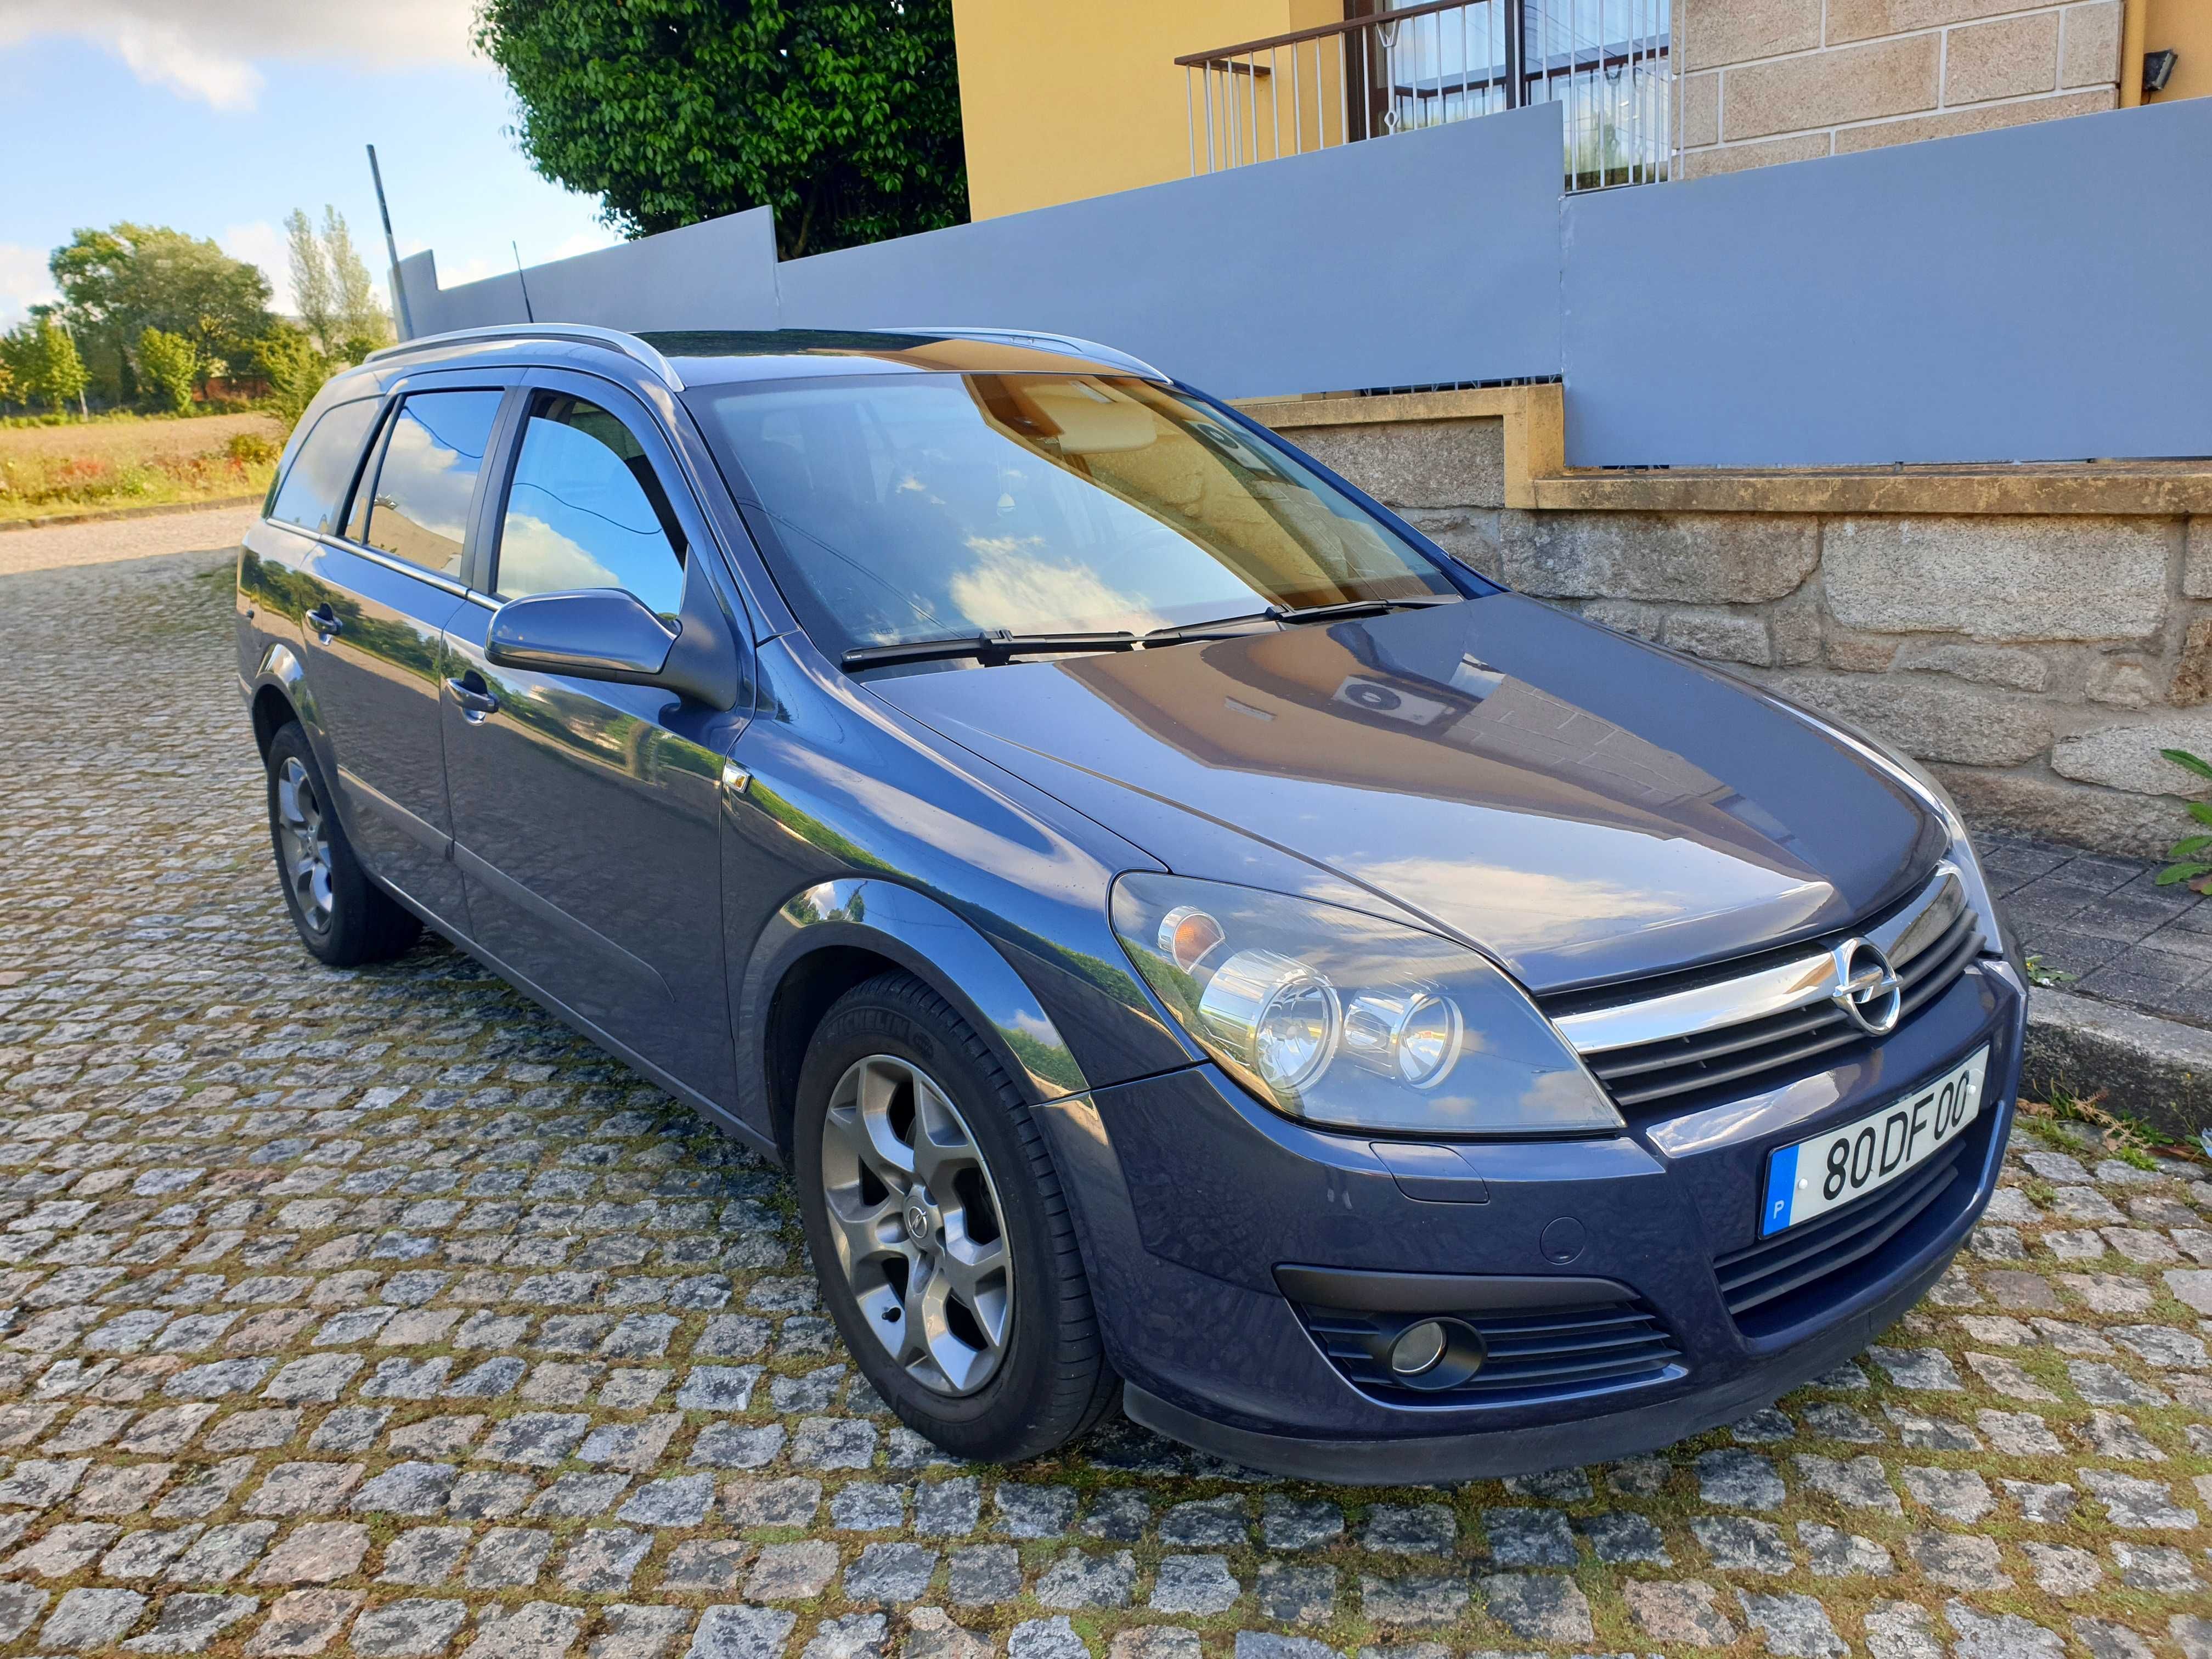 Opel Astra 1.7 CDTI 2007 Selo Barato